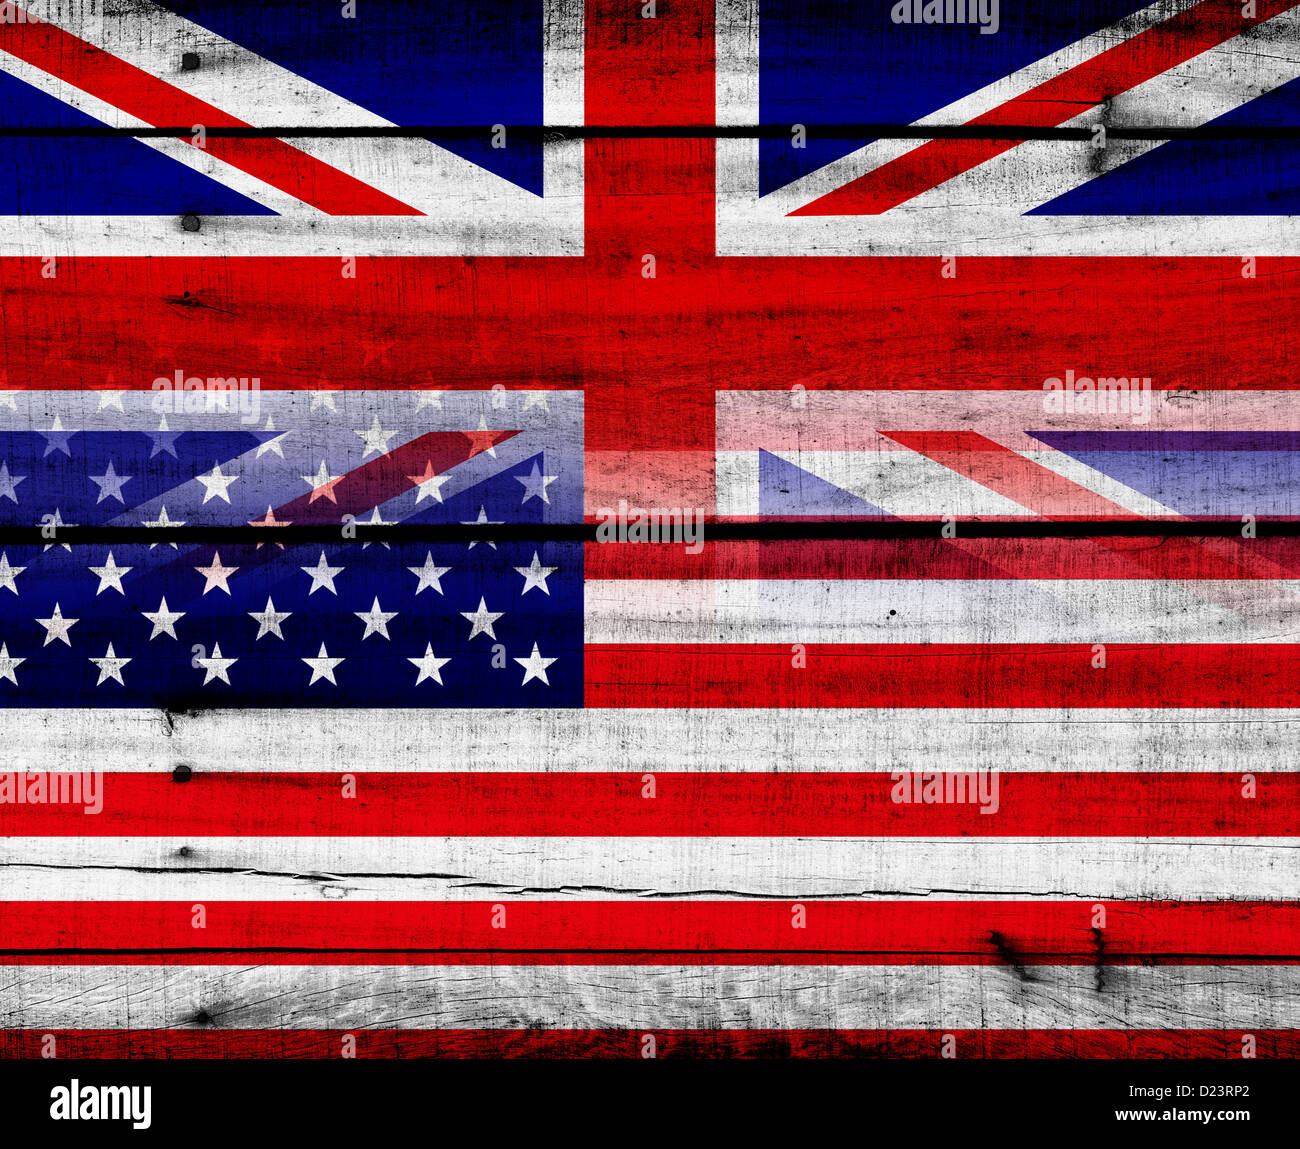 Amerikanische Flagge und Union Jack flag Montage mit Holz strukturierten Hintergrund Stockfoto